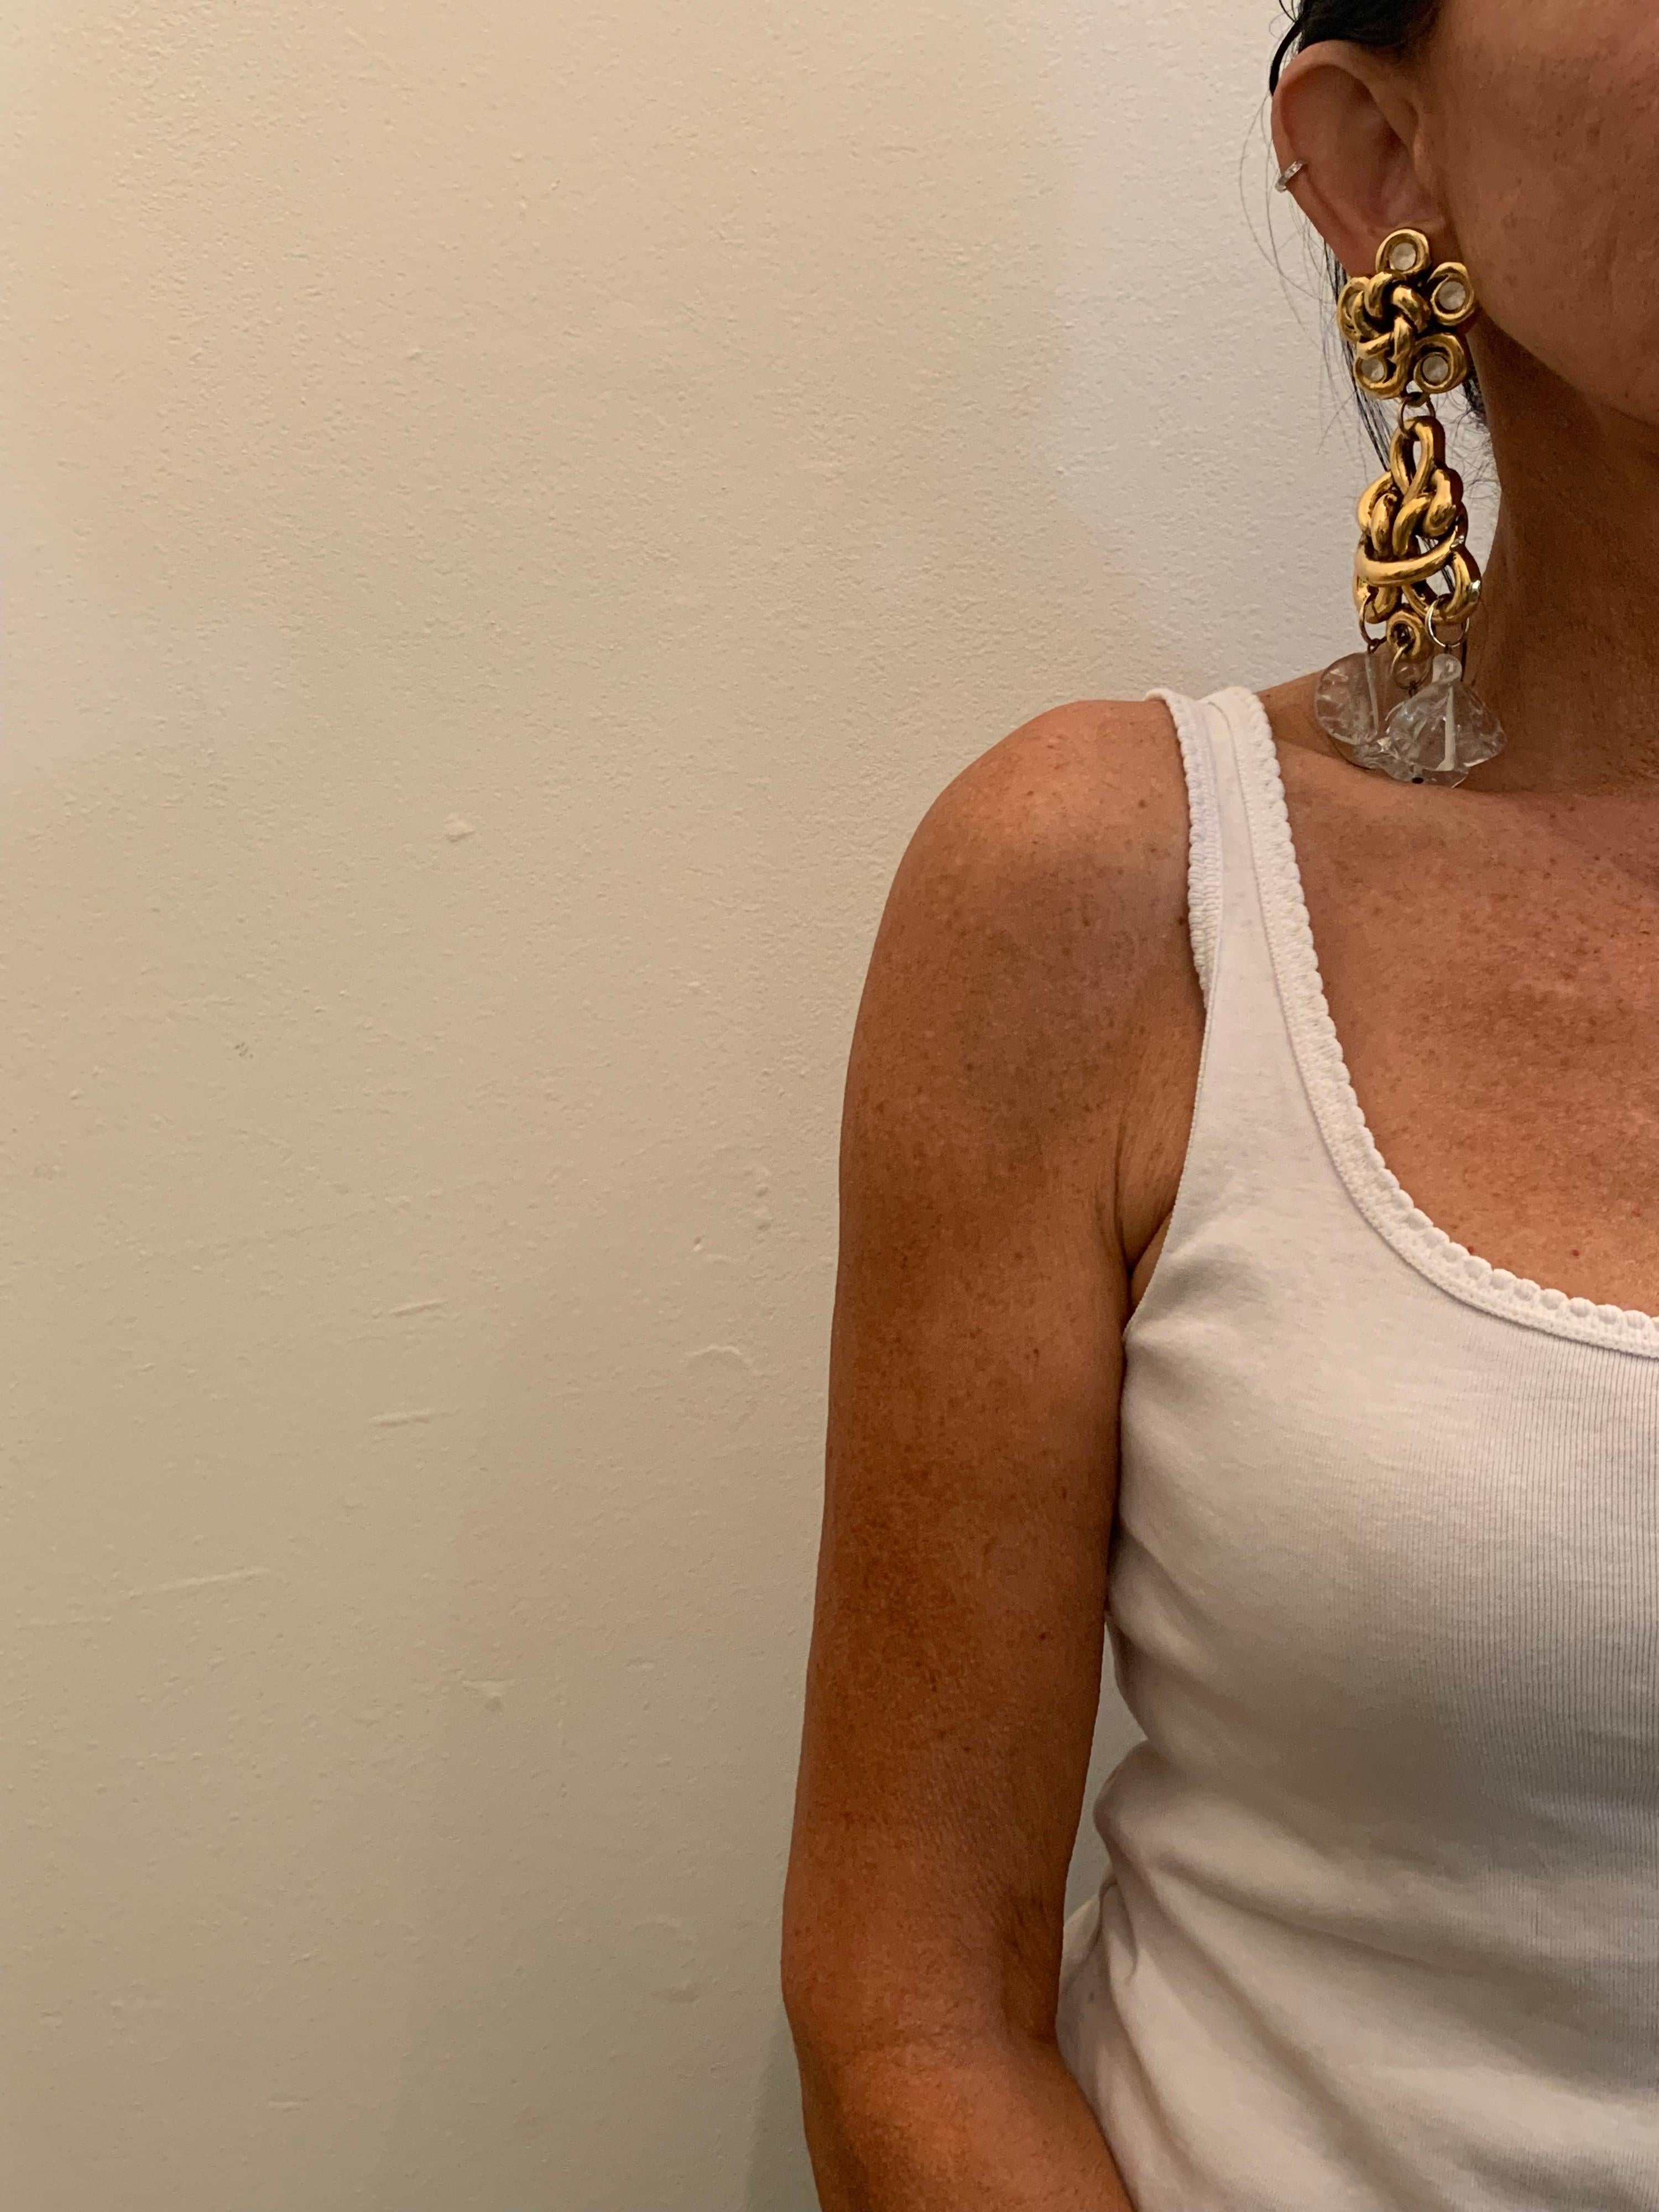 Sensationnelles boucles d'oreilles françaises vintage à clip, datant de 1980 - composées de segments en métal doré incrustés de faux diamants mélangés à des perles en verre trempé manipulées à la main qui donnent du mouvement à l'ensemble de la